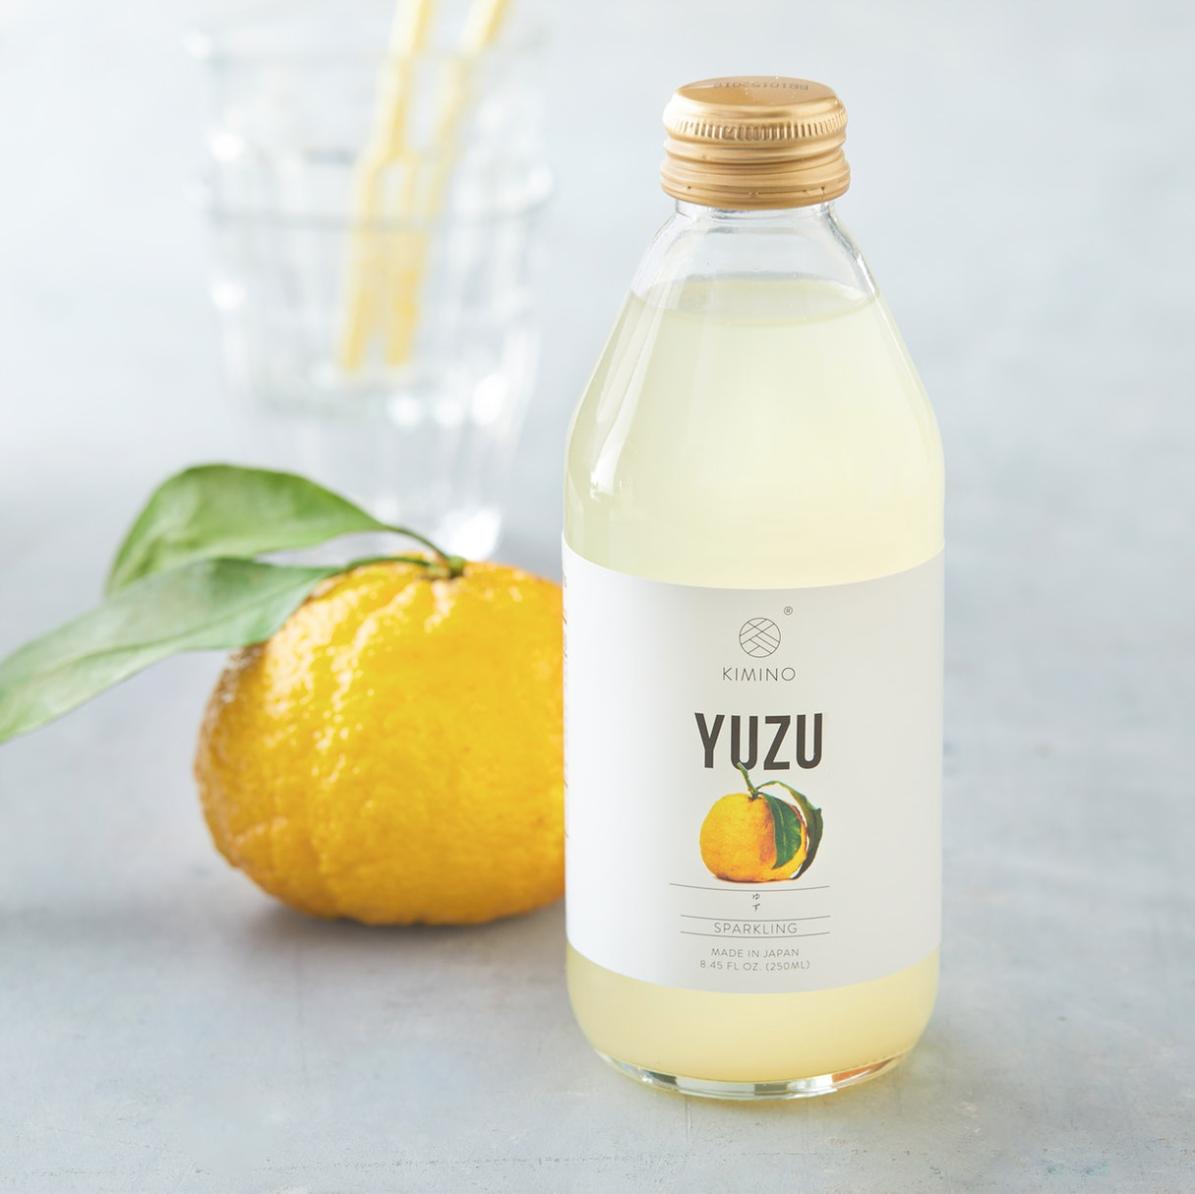 Yuzu access. Лимонад юдзу манго. Лимонад юдзу личи. Лимонад юдзу маракуйя. Цитрусовый юдзу лимонад.